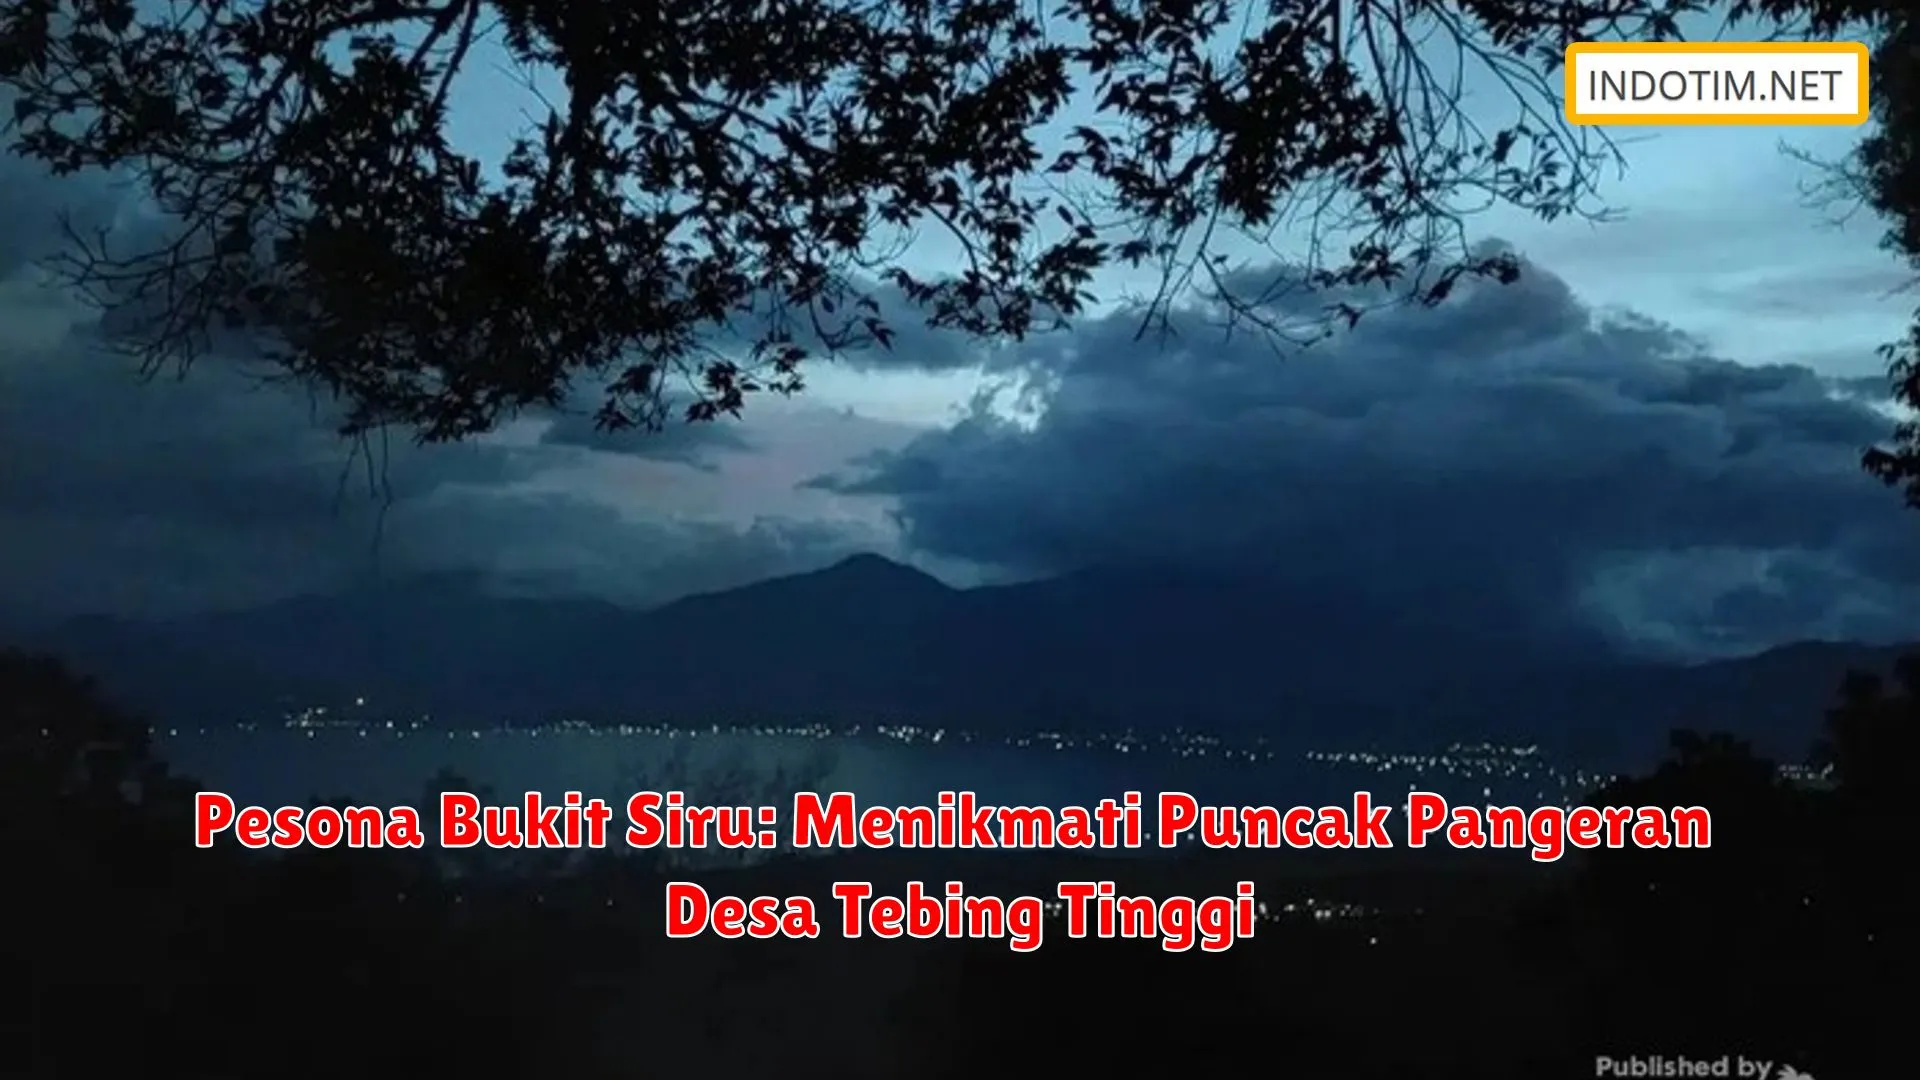 Pesona Bukit Siru: Menikmati Puncak Pangeran Desa Tebing Tinggi